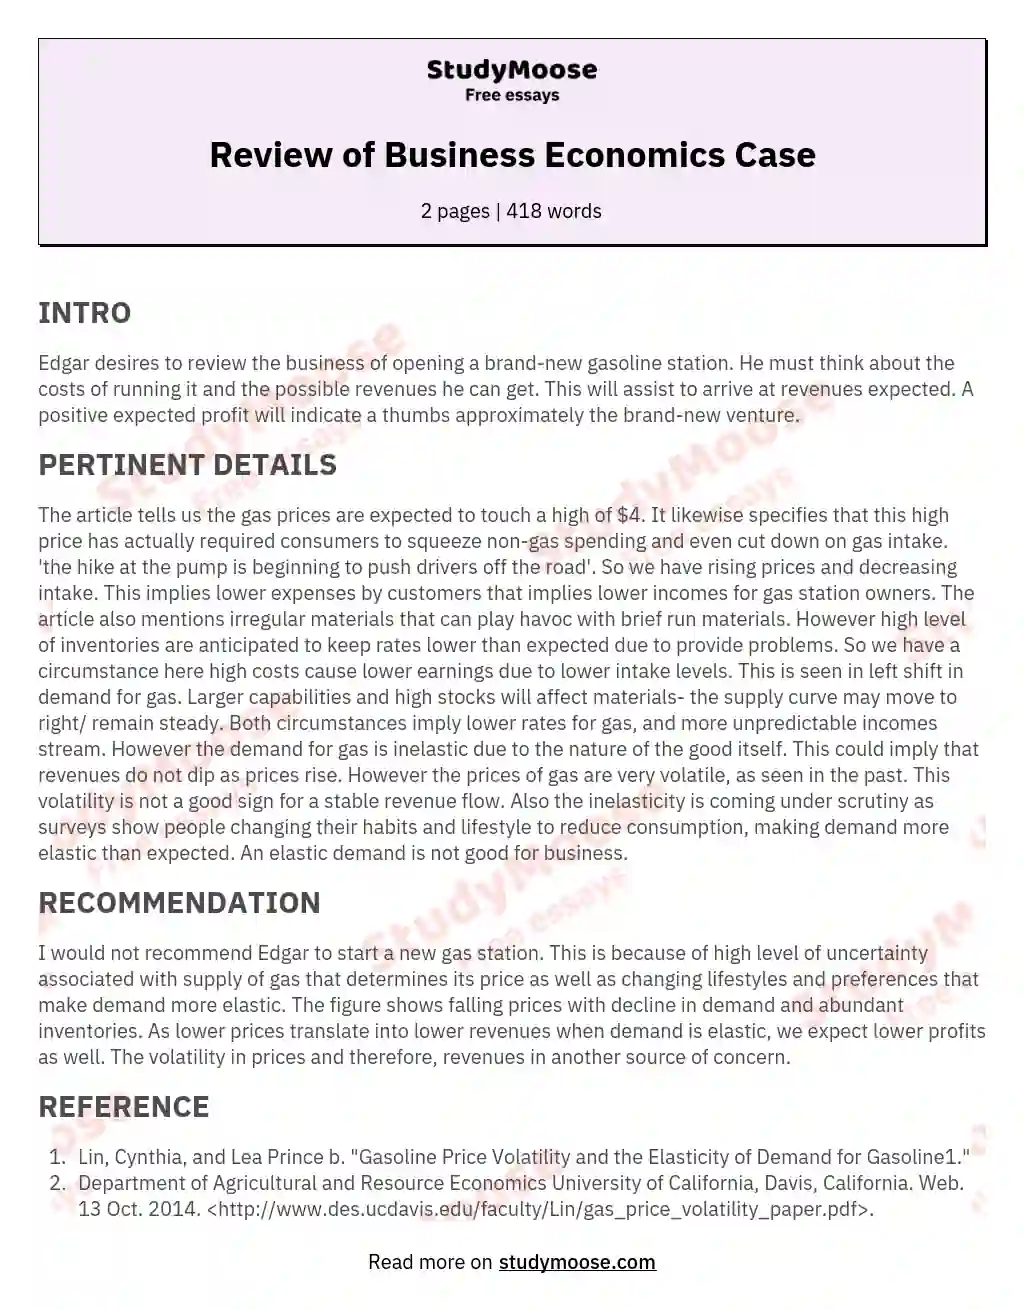 Review of Business Economics Case essay